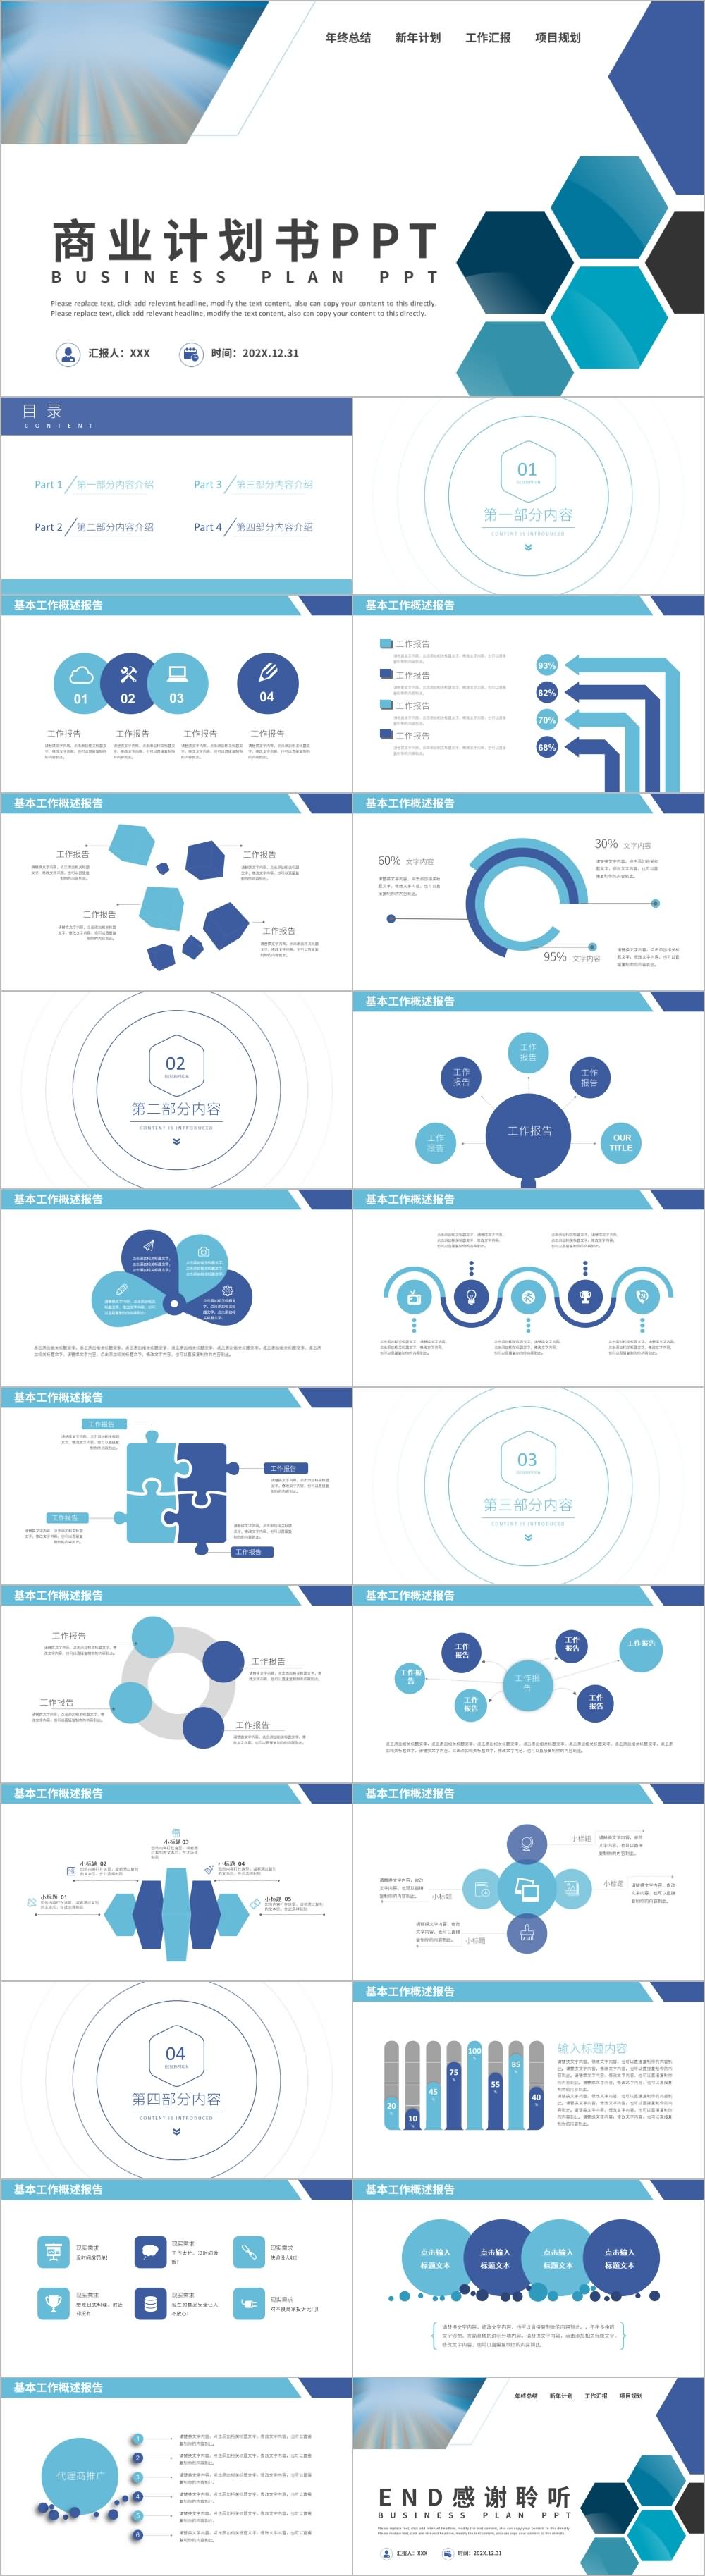 蓝色商务企业创业项目商业计划书PPT模板